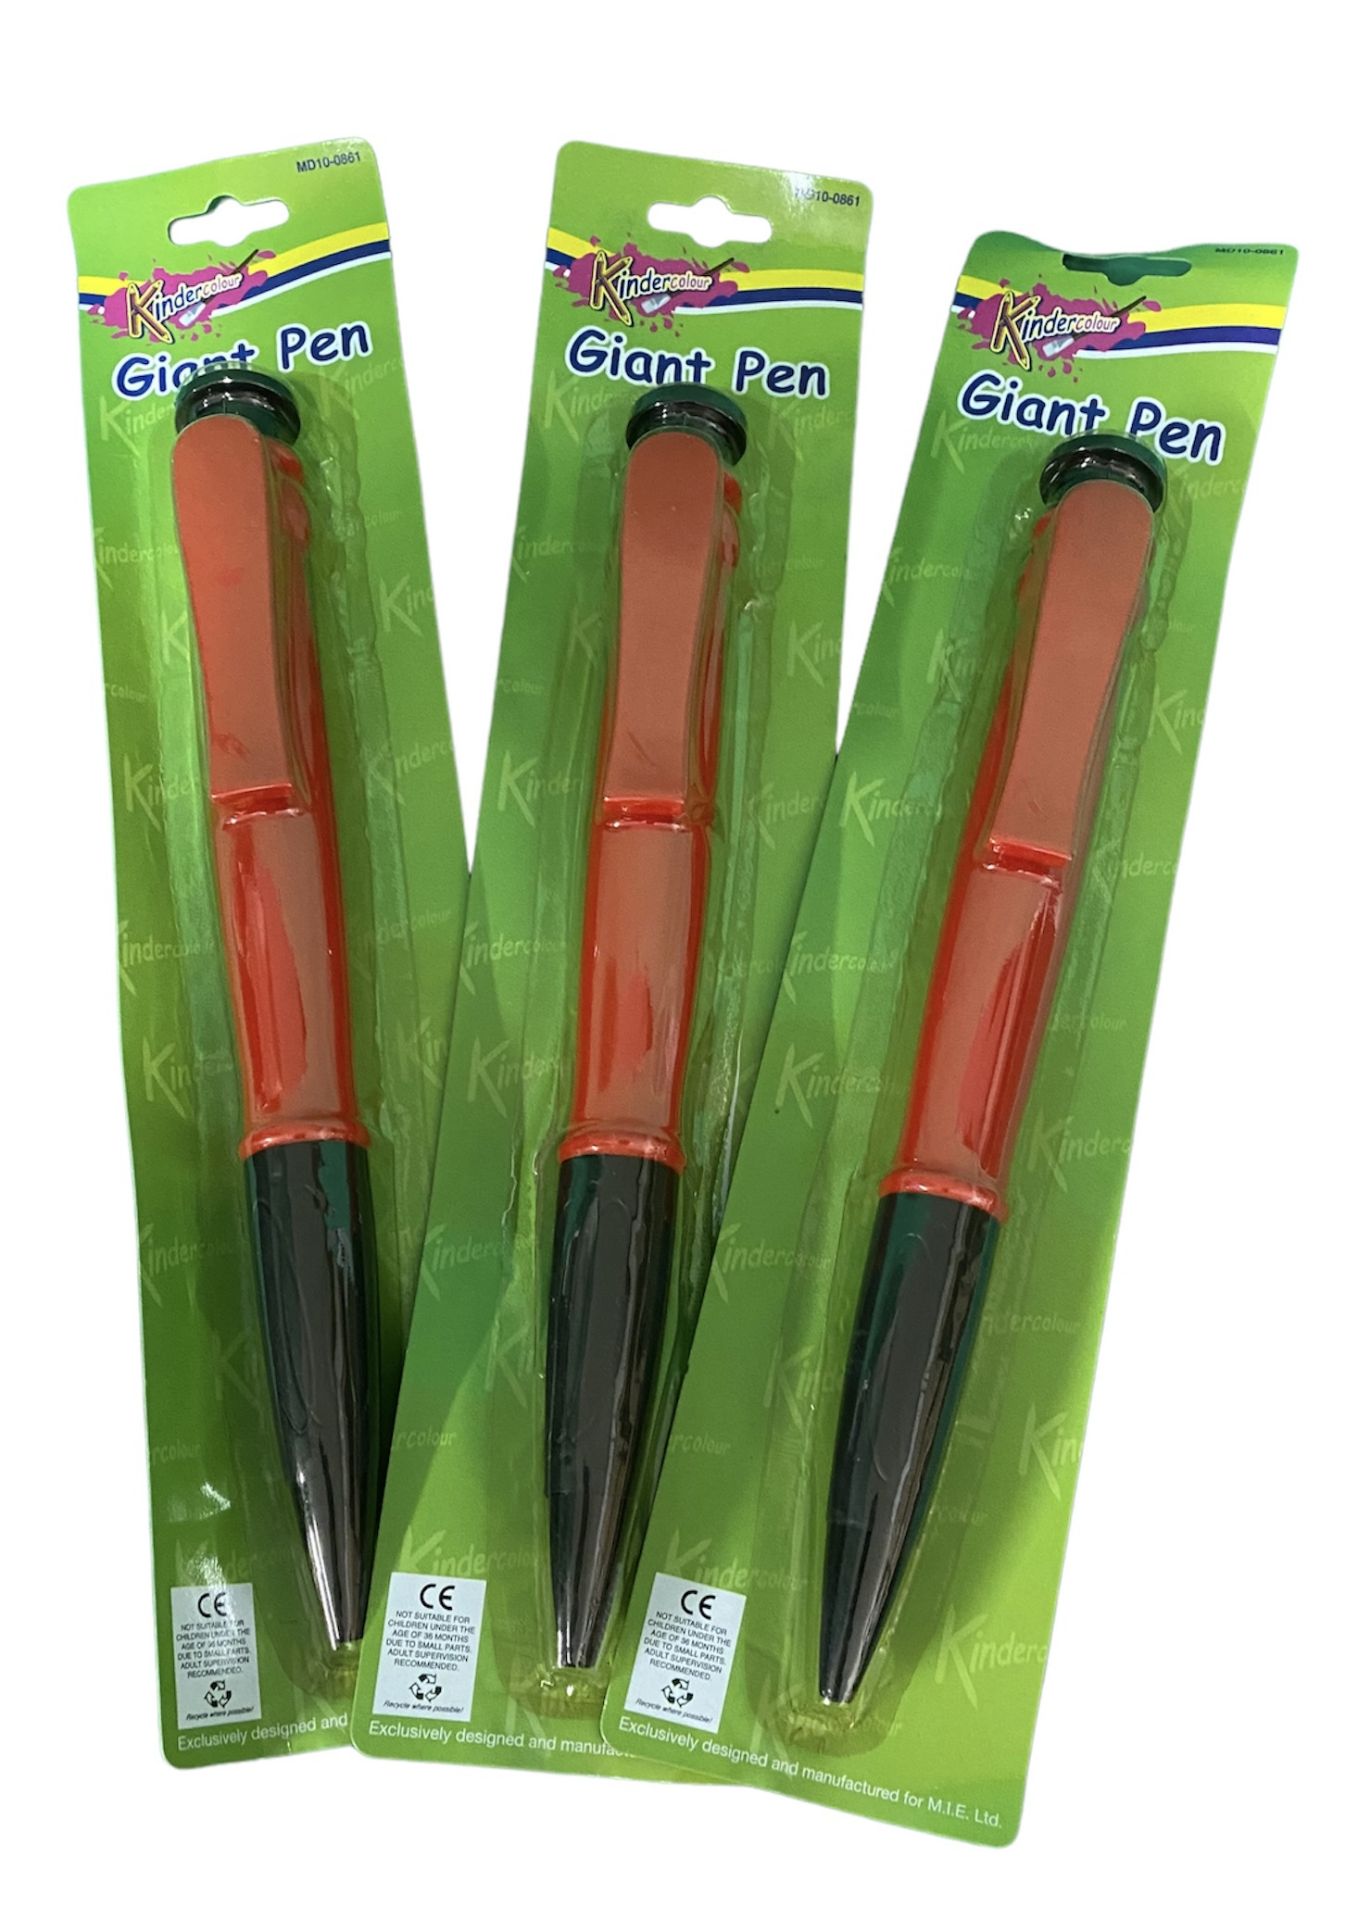 24 x Kinder Colour Giant Pens RRP £4.99 ea.